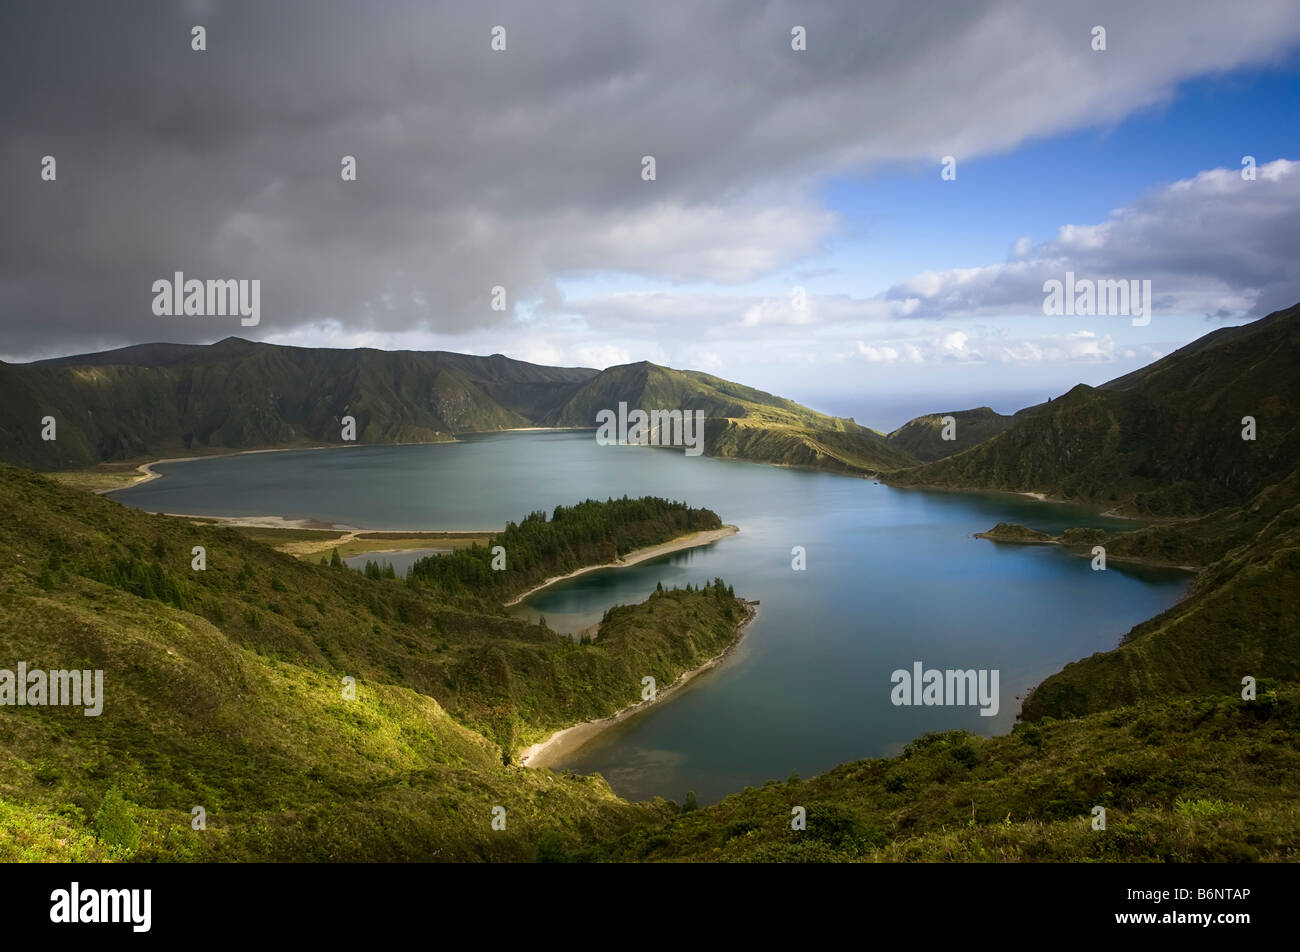 Large Vue aérienne de Fire Lake ou Lagoa do Fogo sur l'île portugaise de Sao Miguel dans les Açores. Banque D'Images